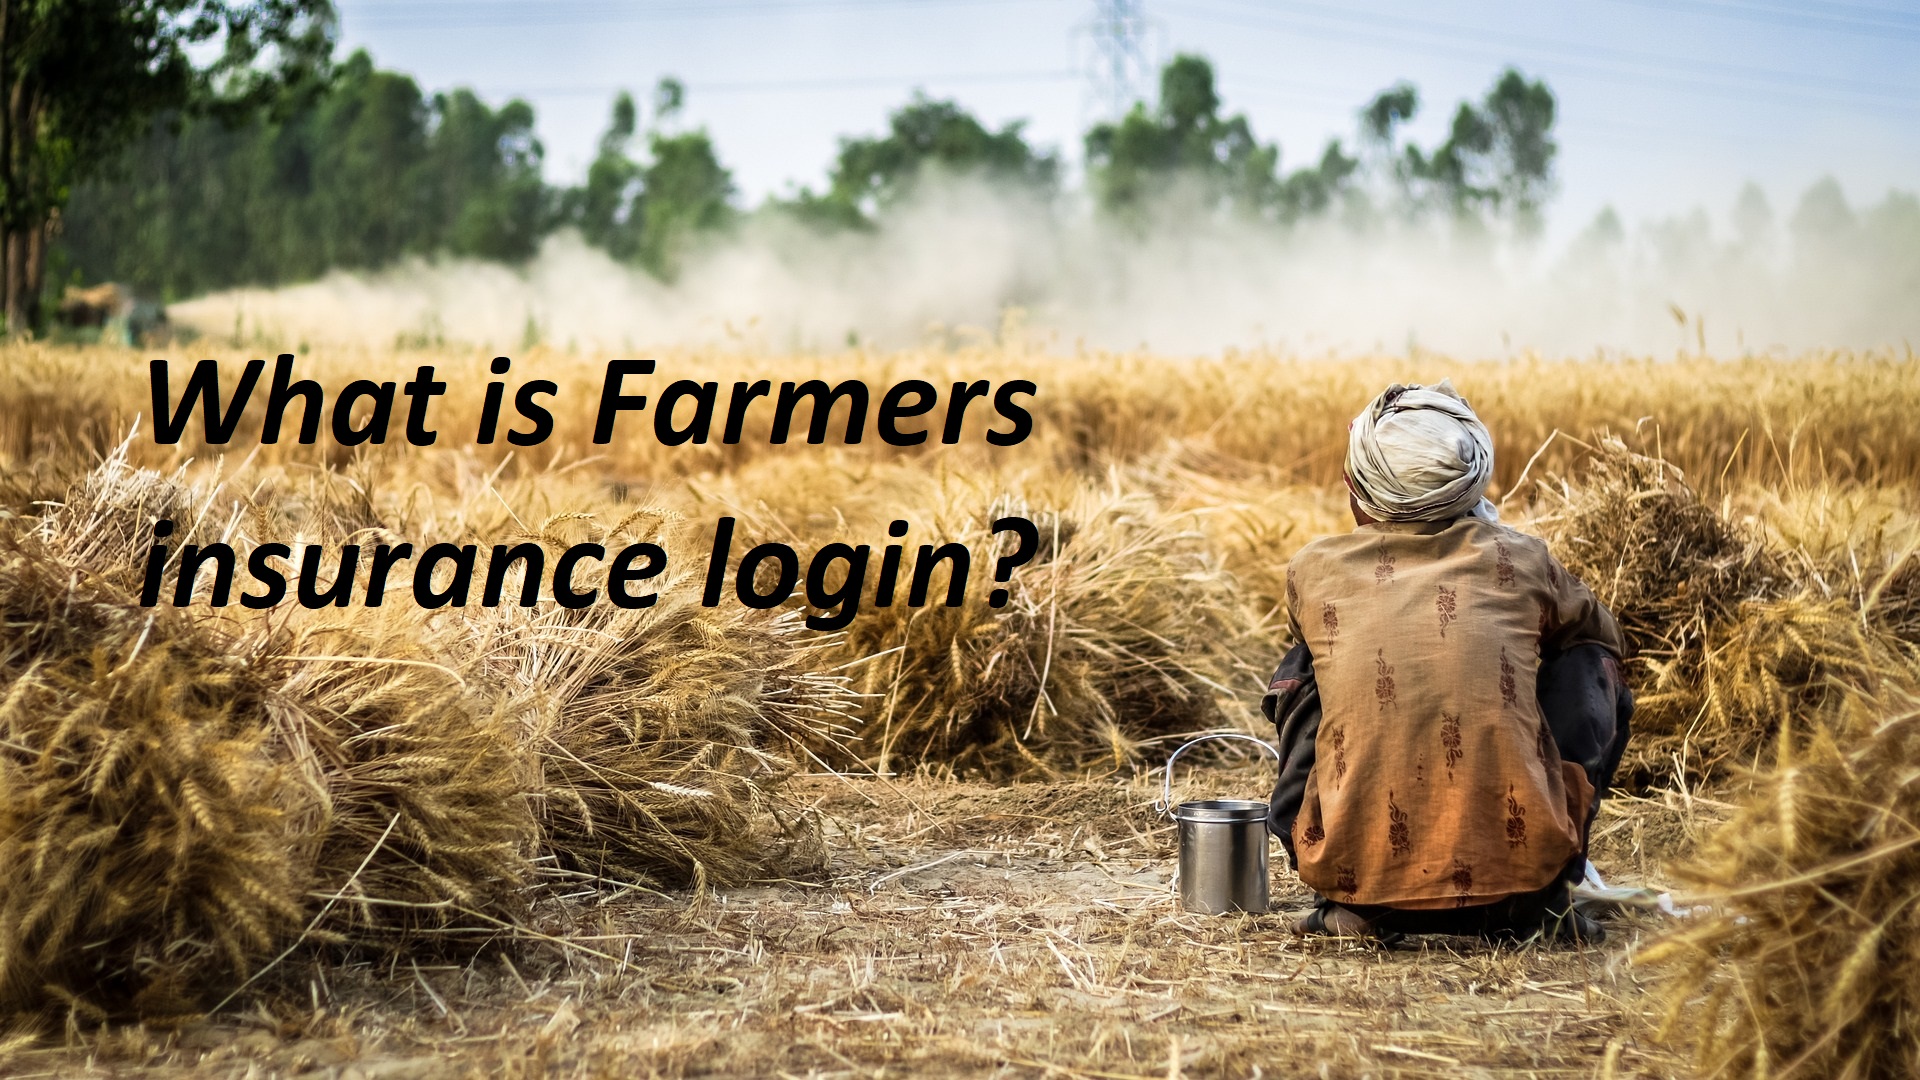 Farmers insurance login